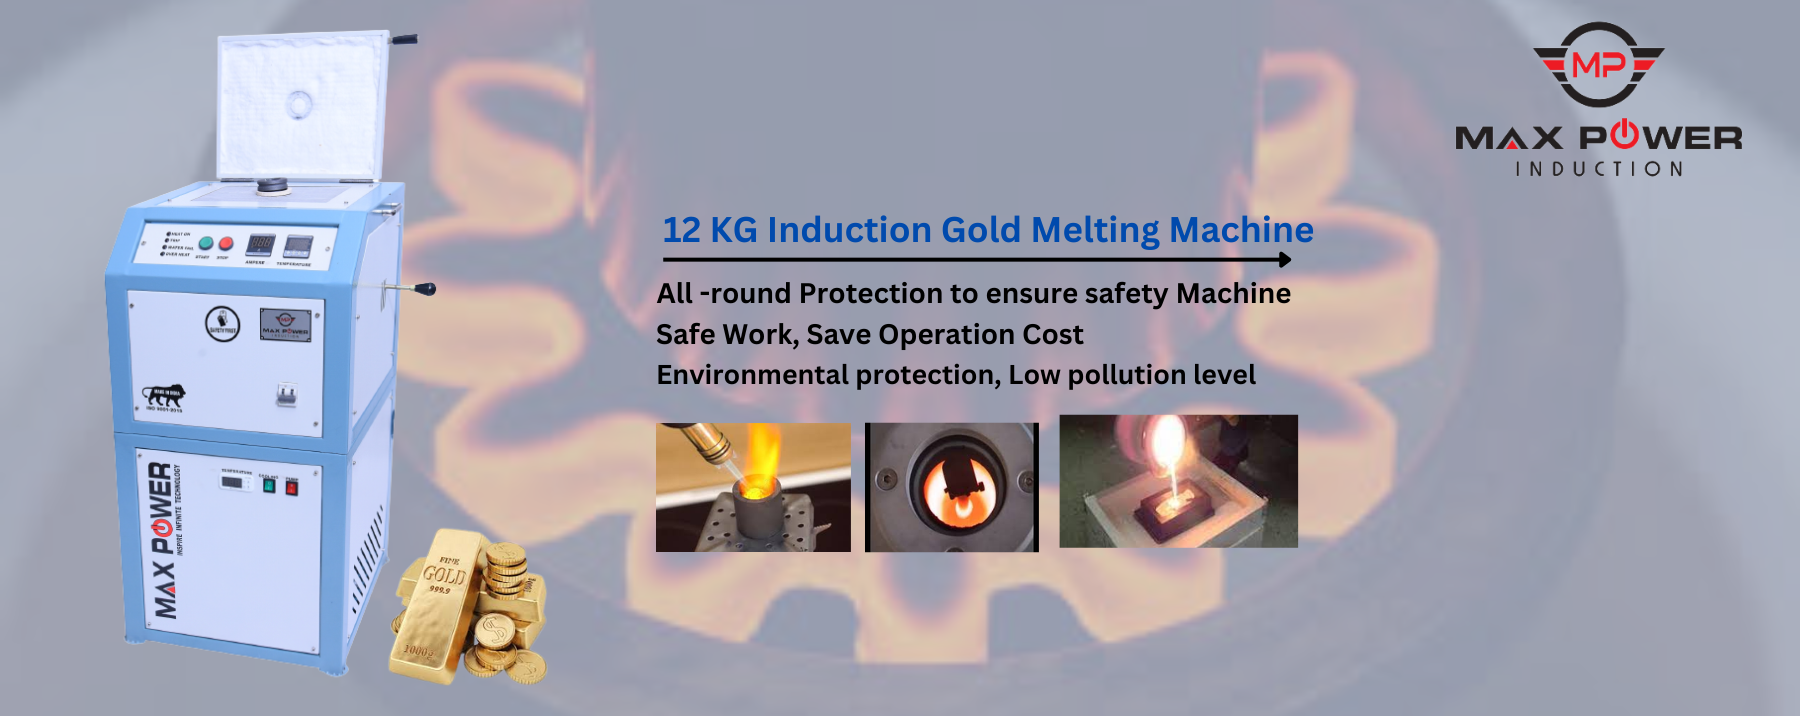 12 KG Induction Gold Melting Furnace